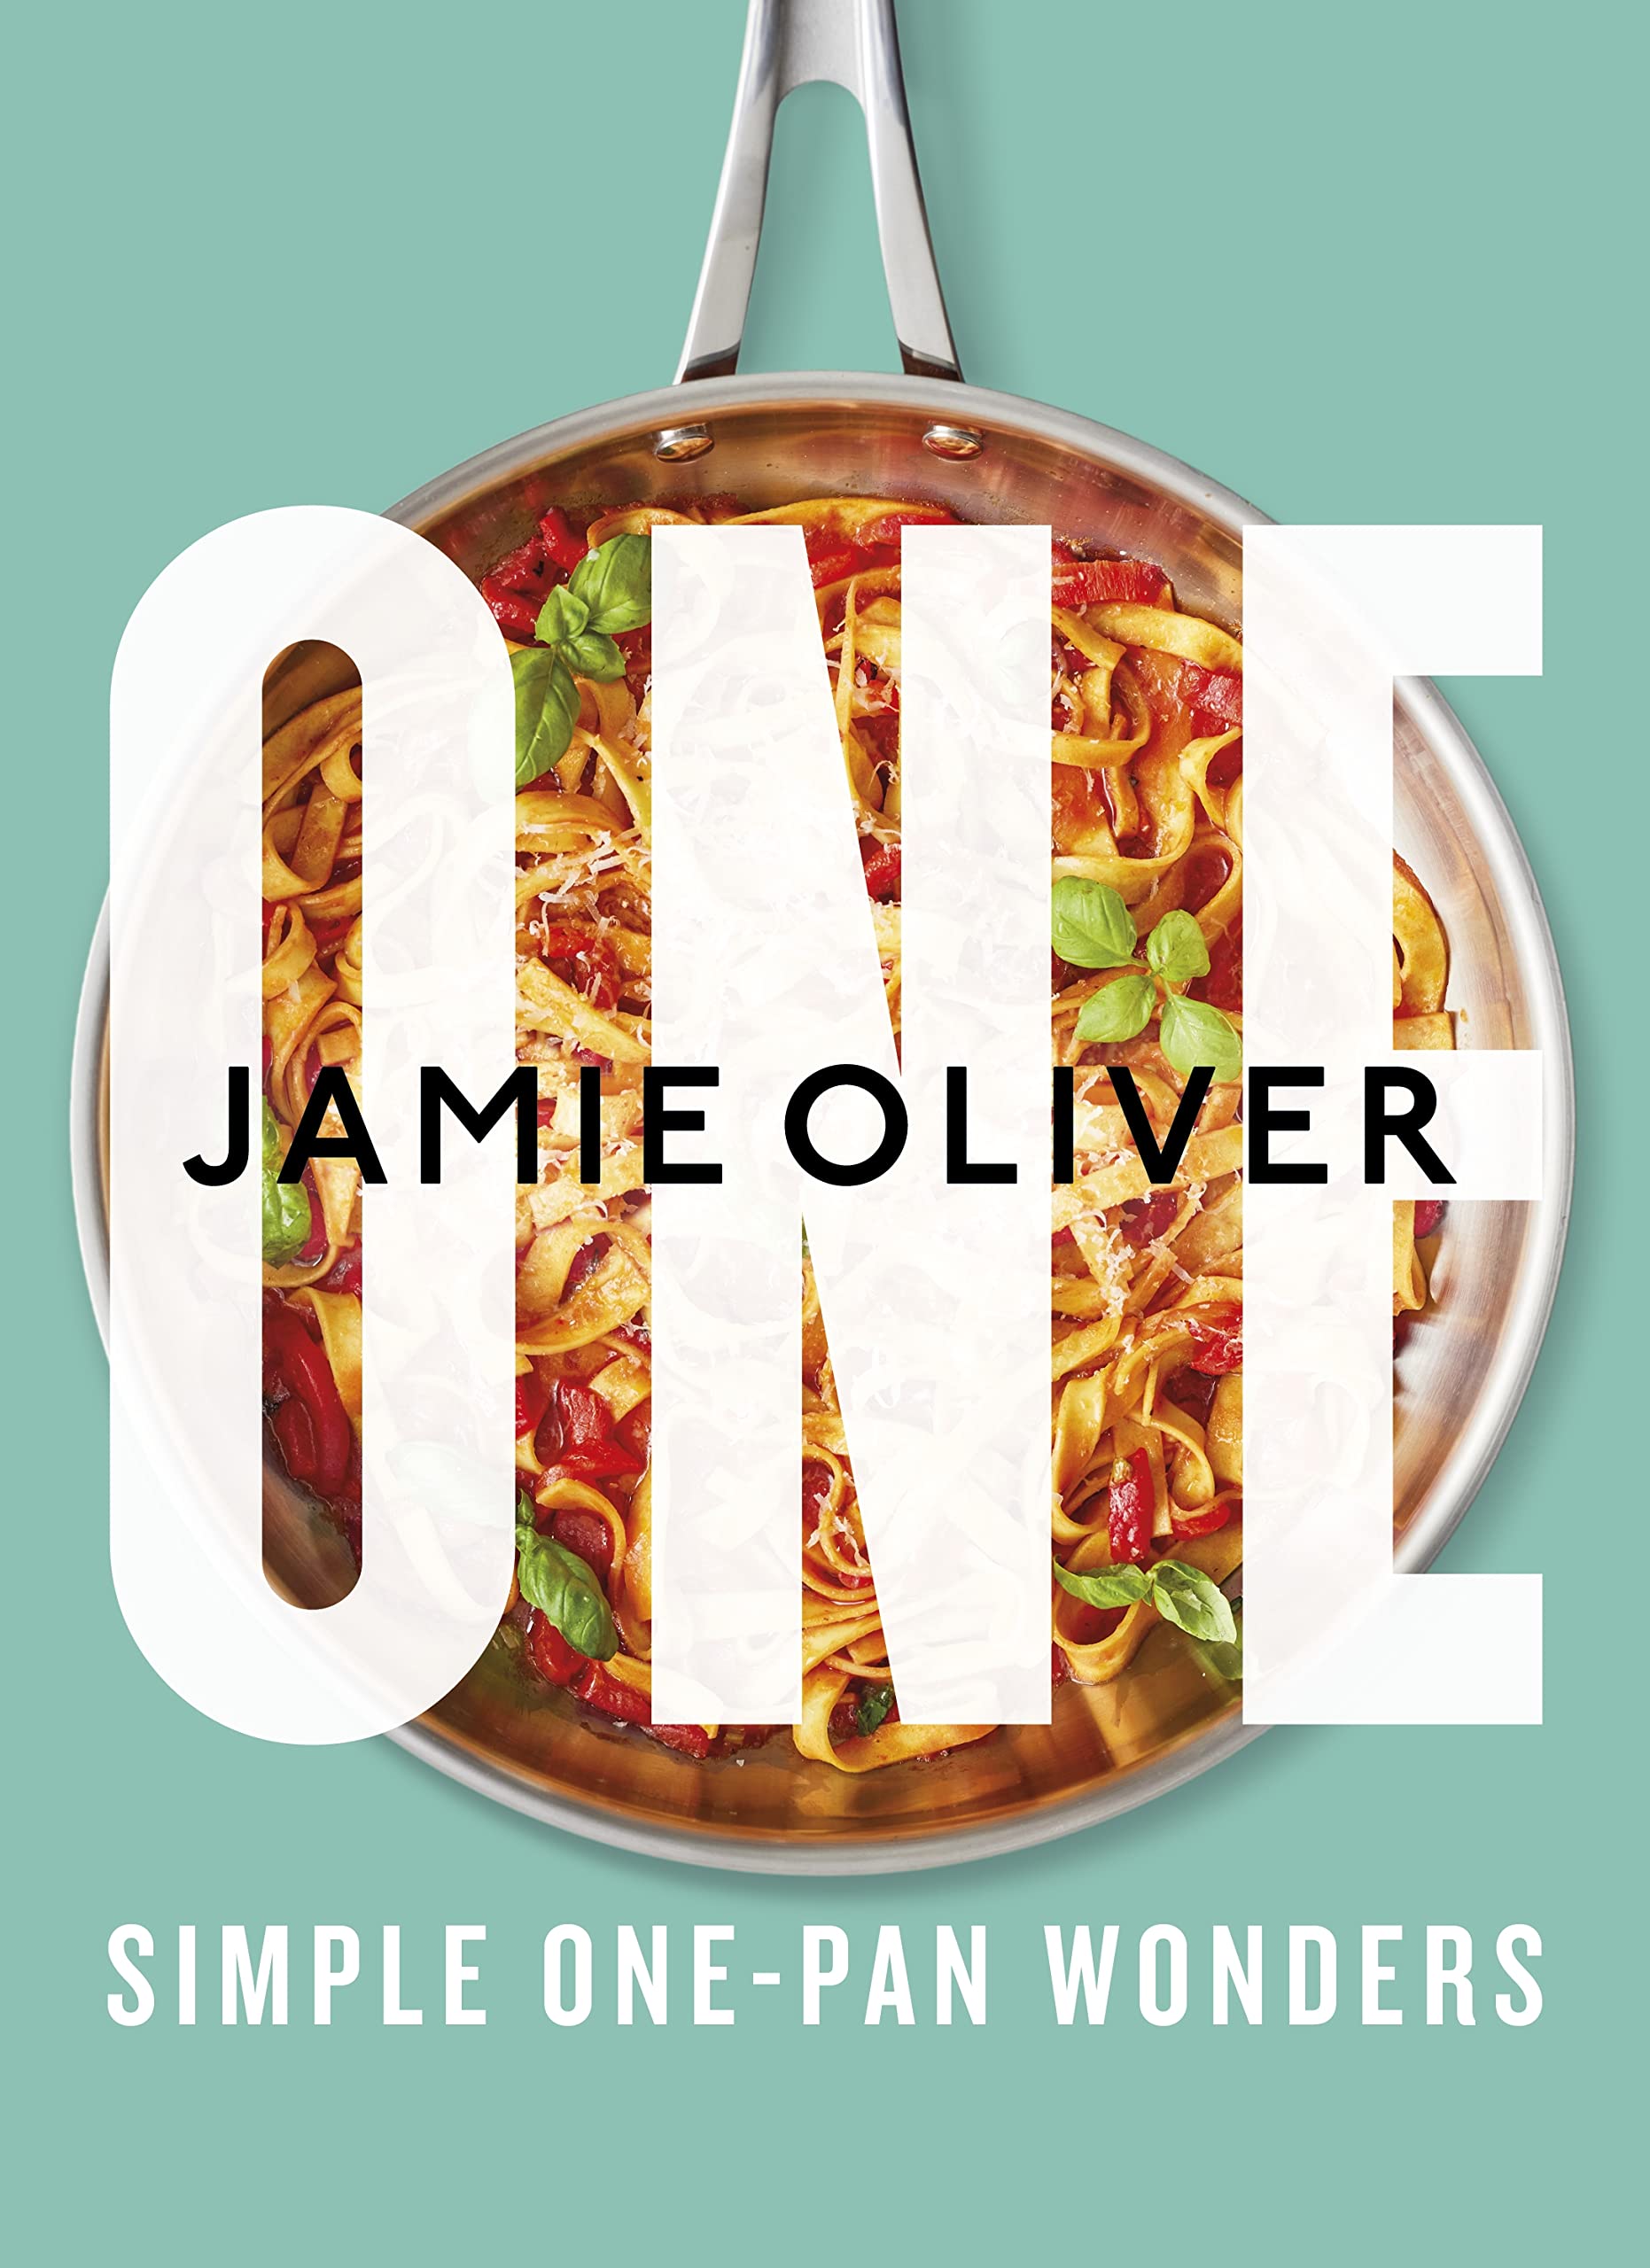 One: Simple One-Pan Wonders: [American Measurements] (eBook) by Jamie Oliver $2.99